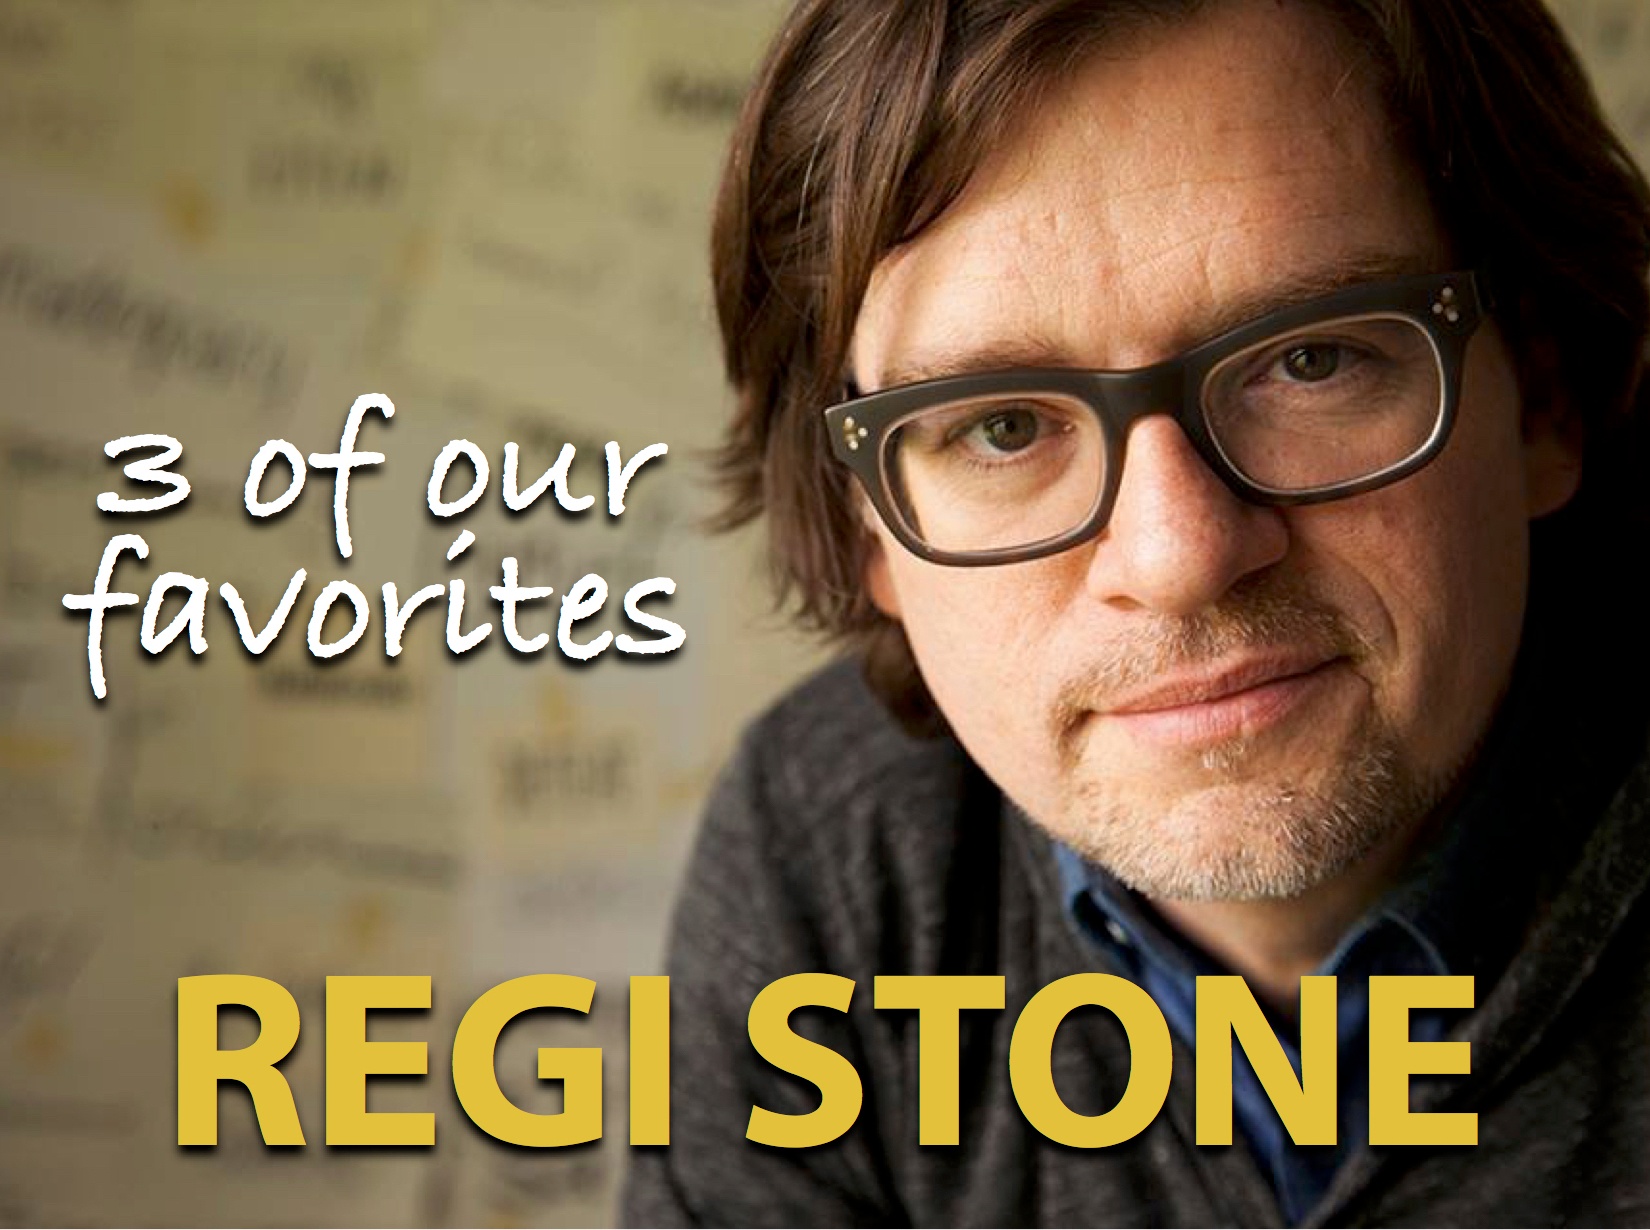 Regi Stone 3 of Our Favorites Banner.jpg